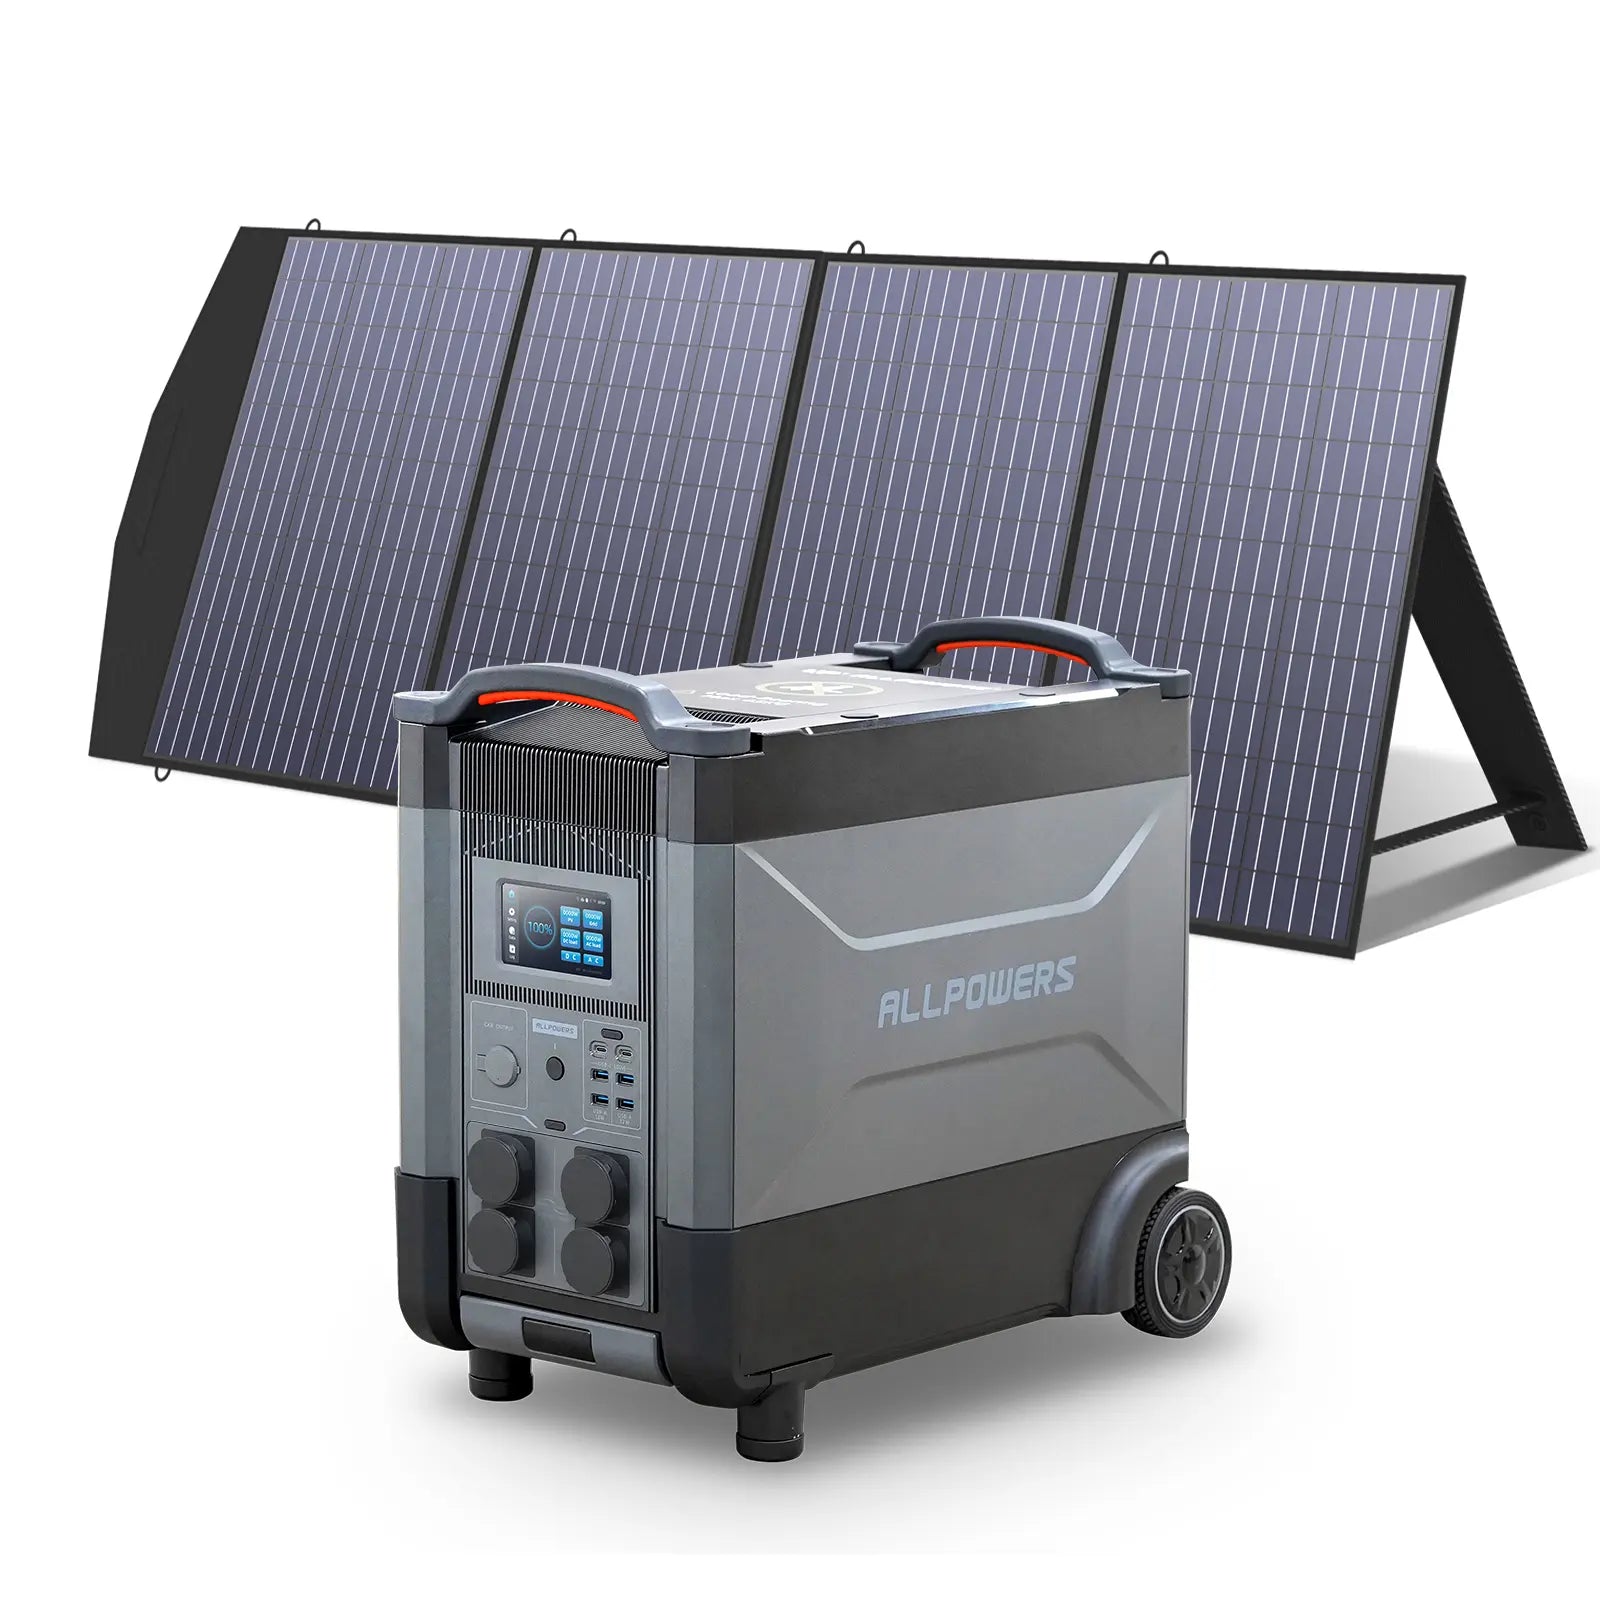 ALLPOWERS 4000W Generatore Solare (R4000 + SP033 200W Pannello Solare)